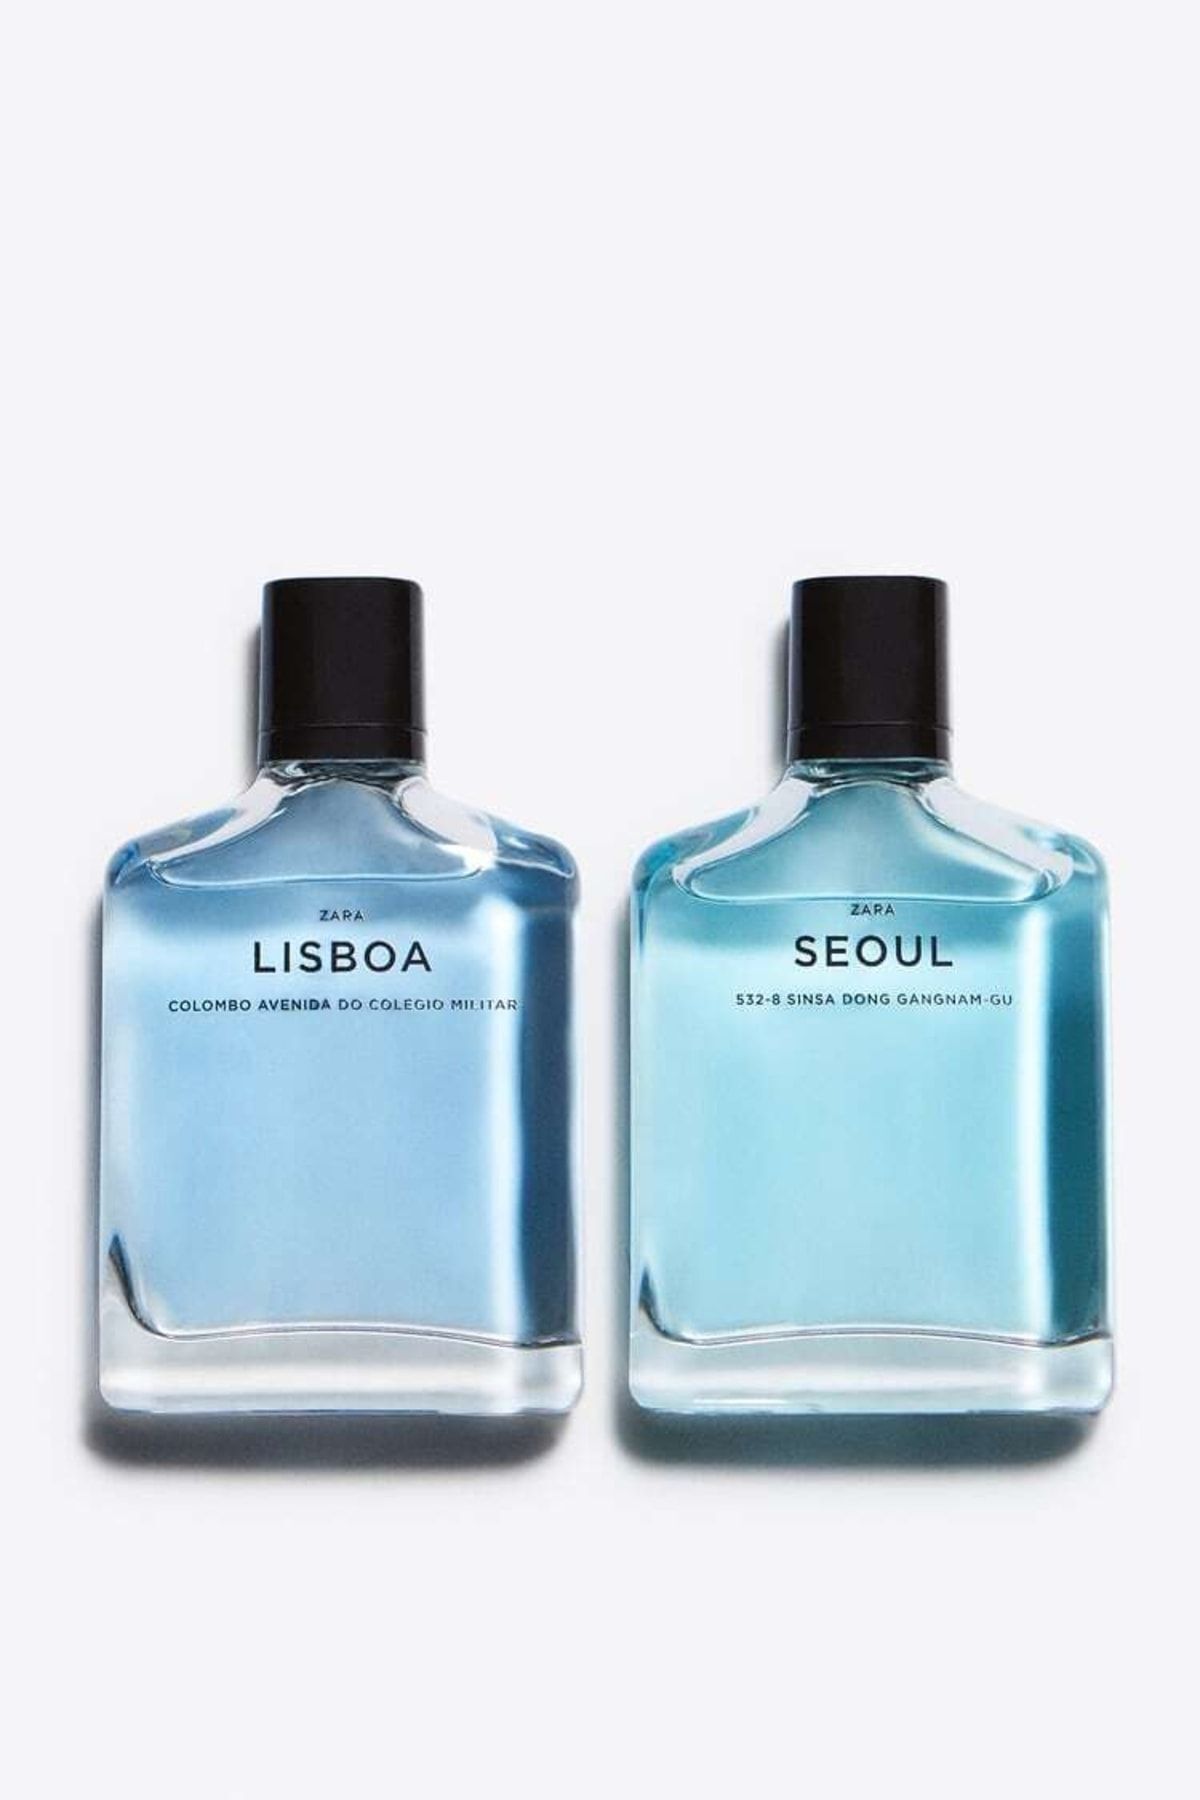 Zara Seoul 100 ml Lısboa 100 ml